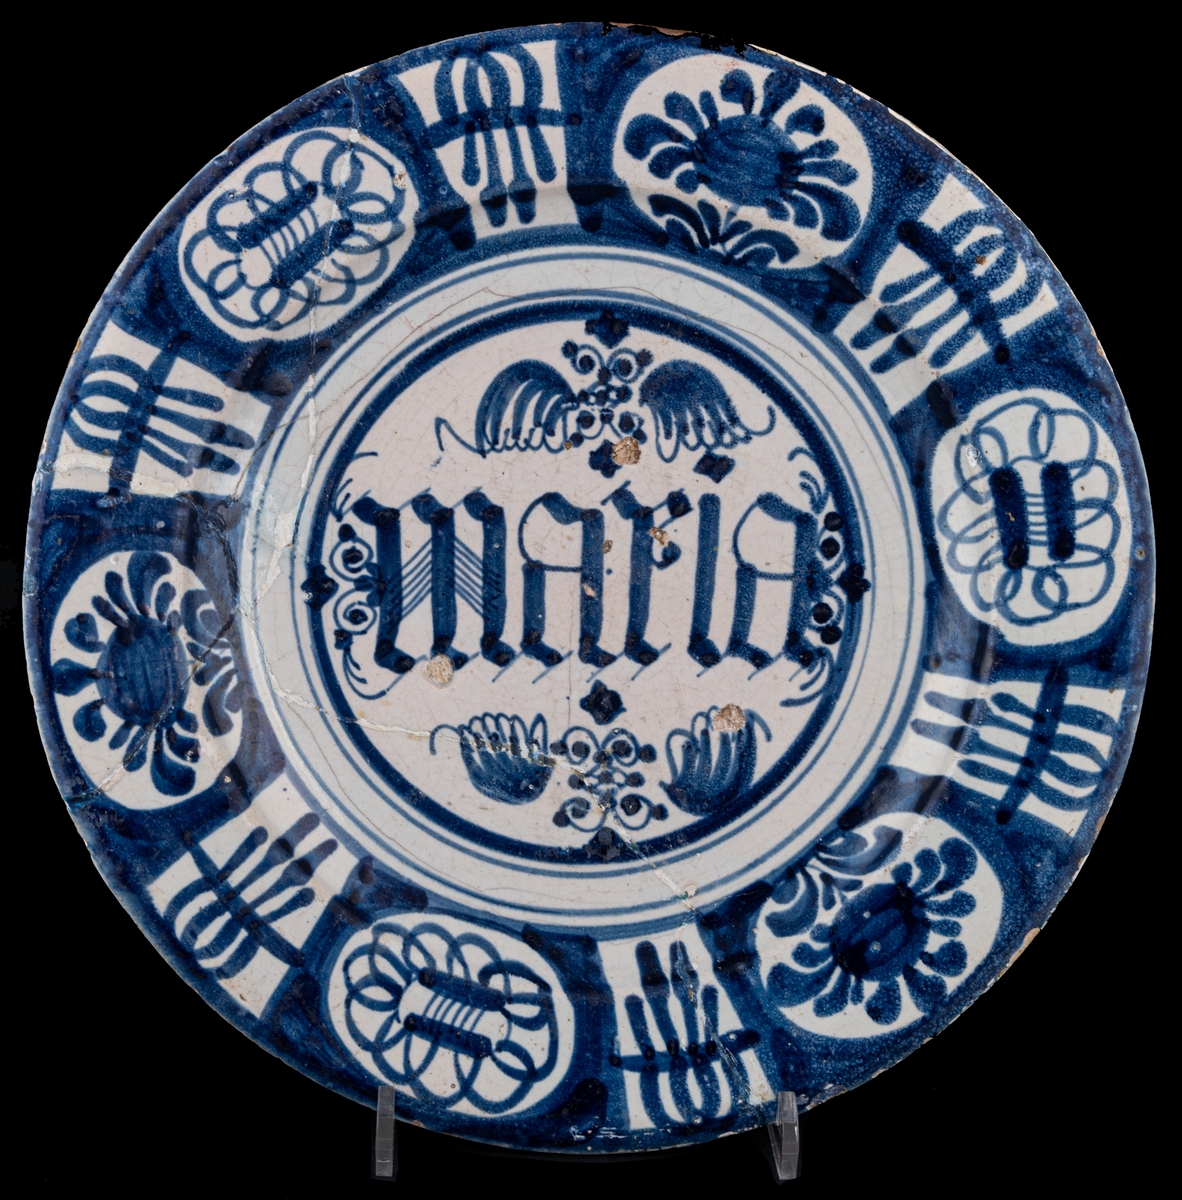 Fat i blått och vitt, i mitten "maria". Holländsk fajans från början av 1700-talet. Lagat.